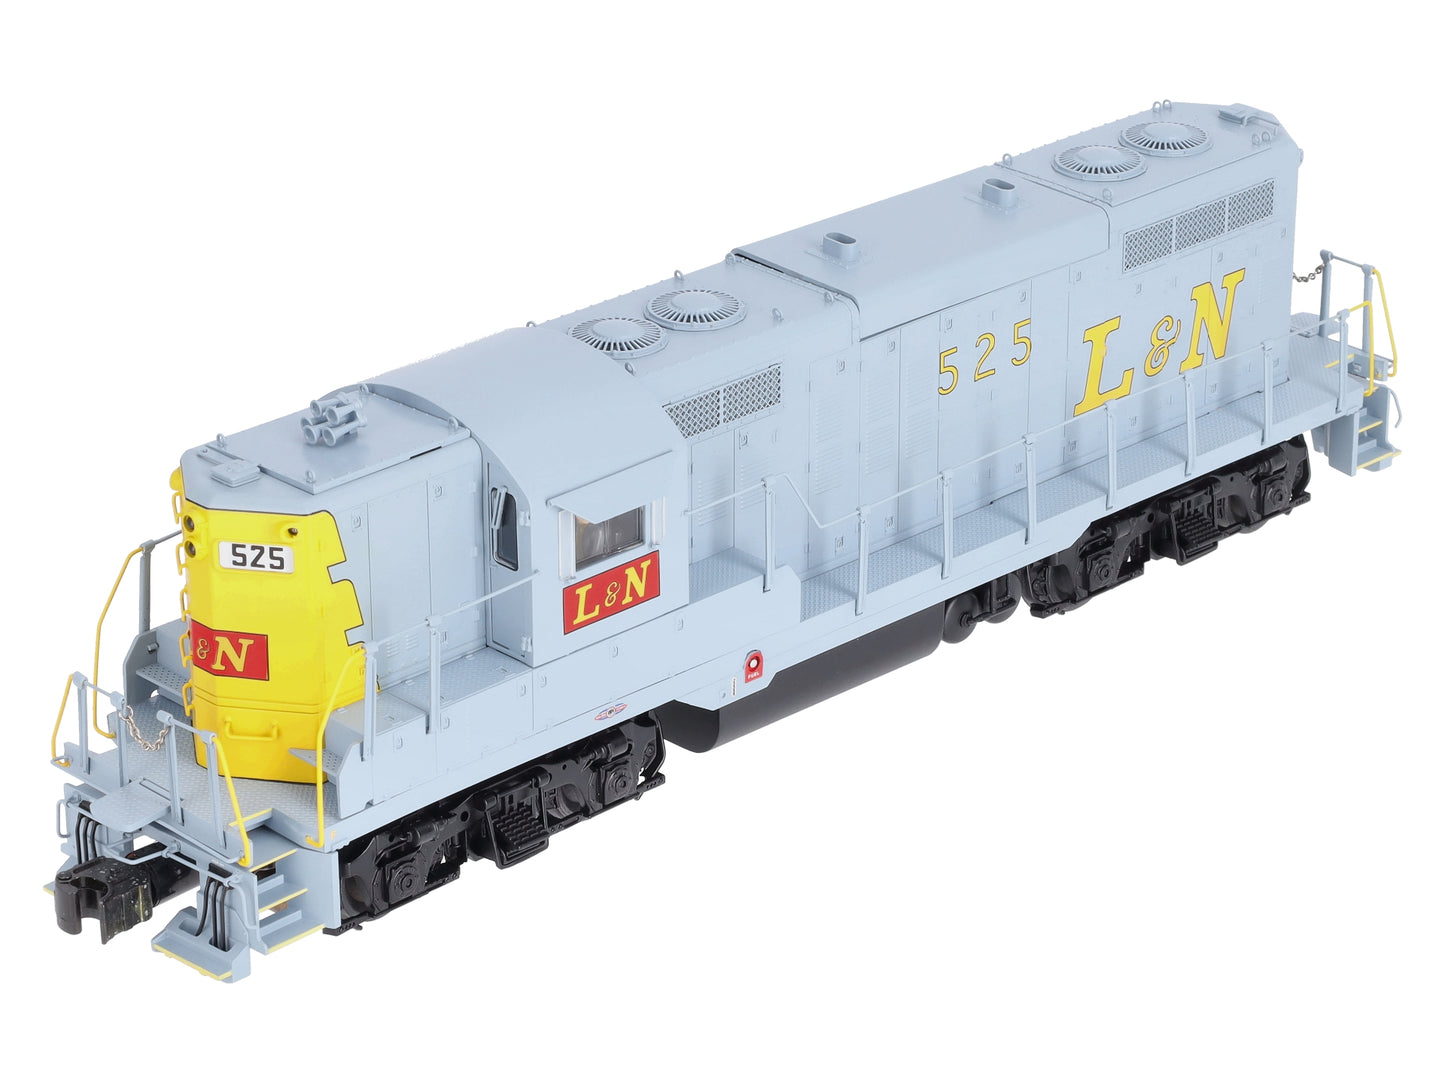 Lionel 6-34667 Louisville & Nashville GP-9 Legacy Diesel Locomotive #525